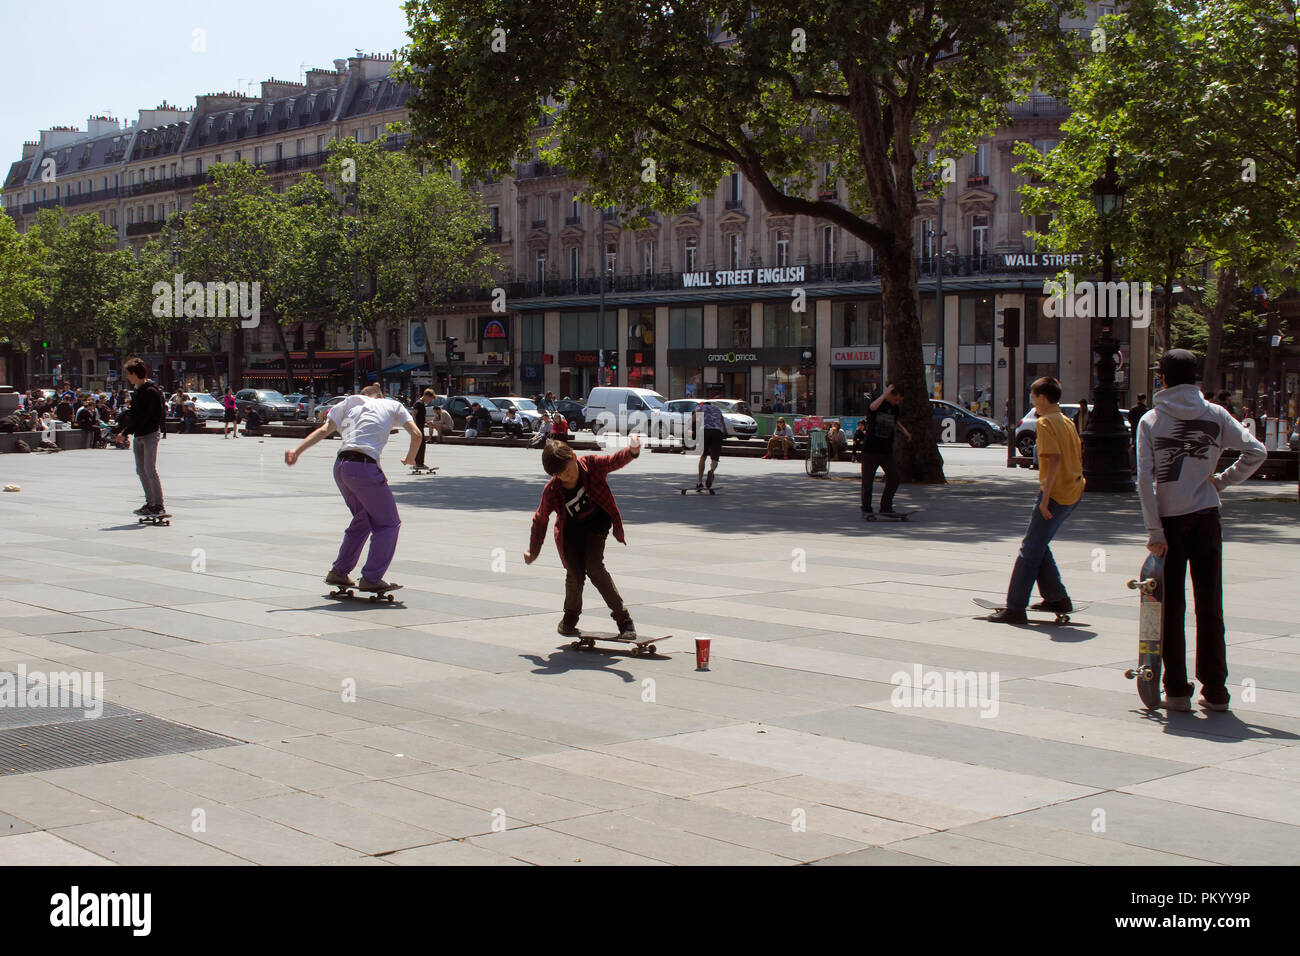 Giovani skate presso la piazza della Repubblica (Place de la Republique Parigi). L'immagine mostra la cultura giovanile della città. Foto Stock